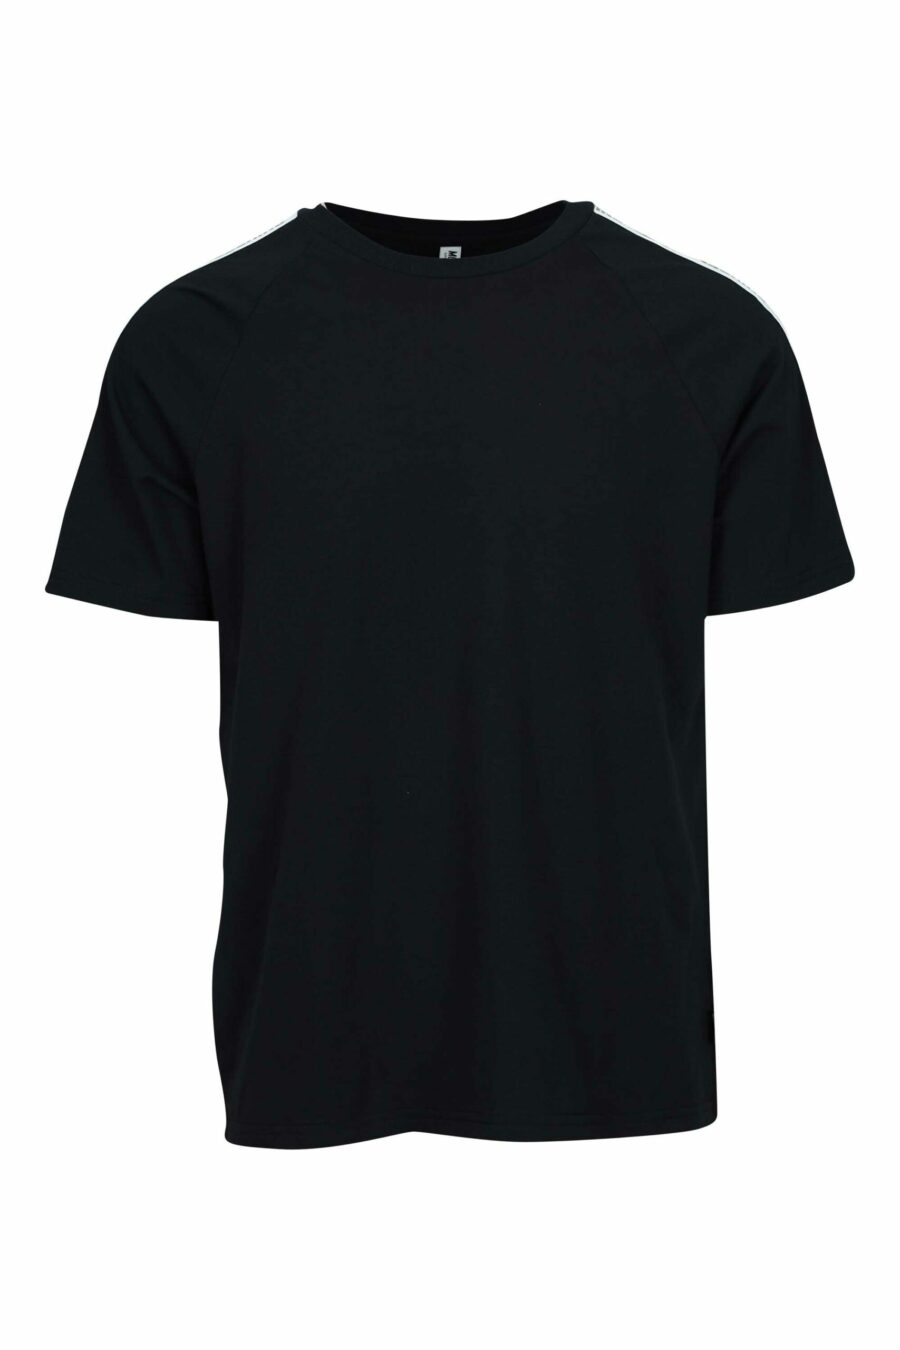 T-shirt noir avec logo d'ours "underbear" sur la bande d'épaule - 667113602356 scaled